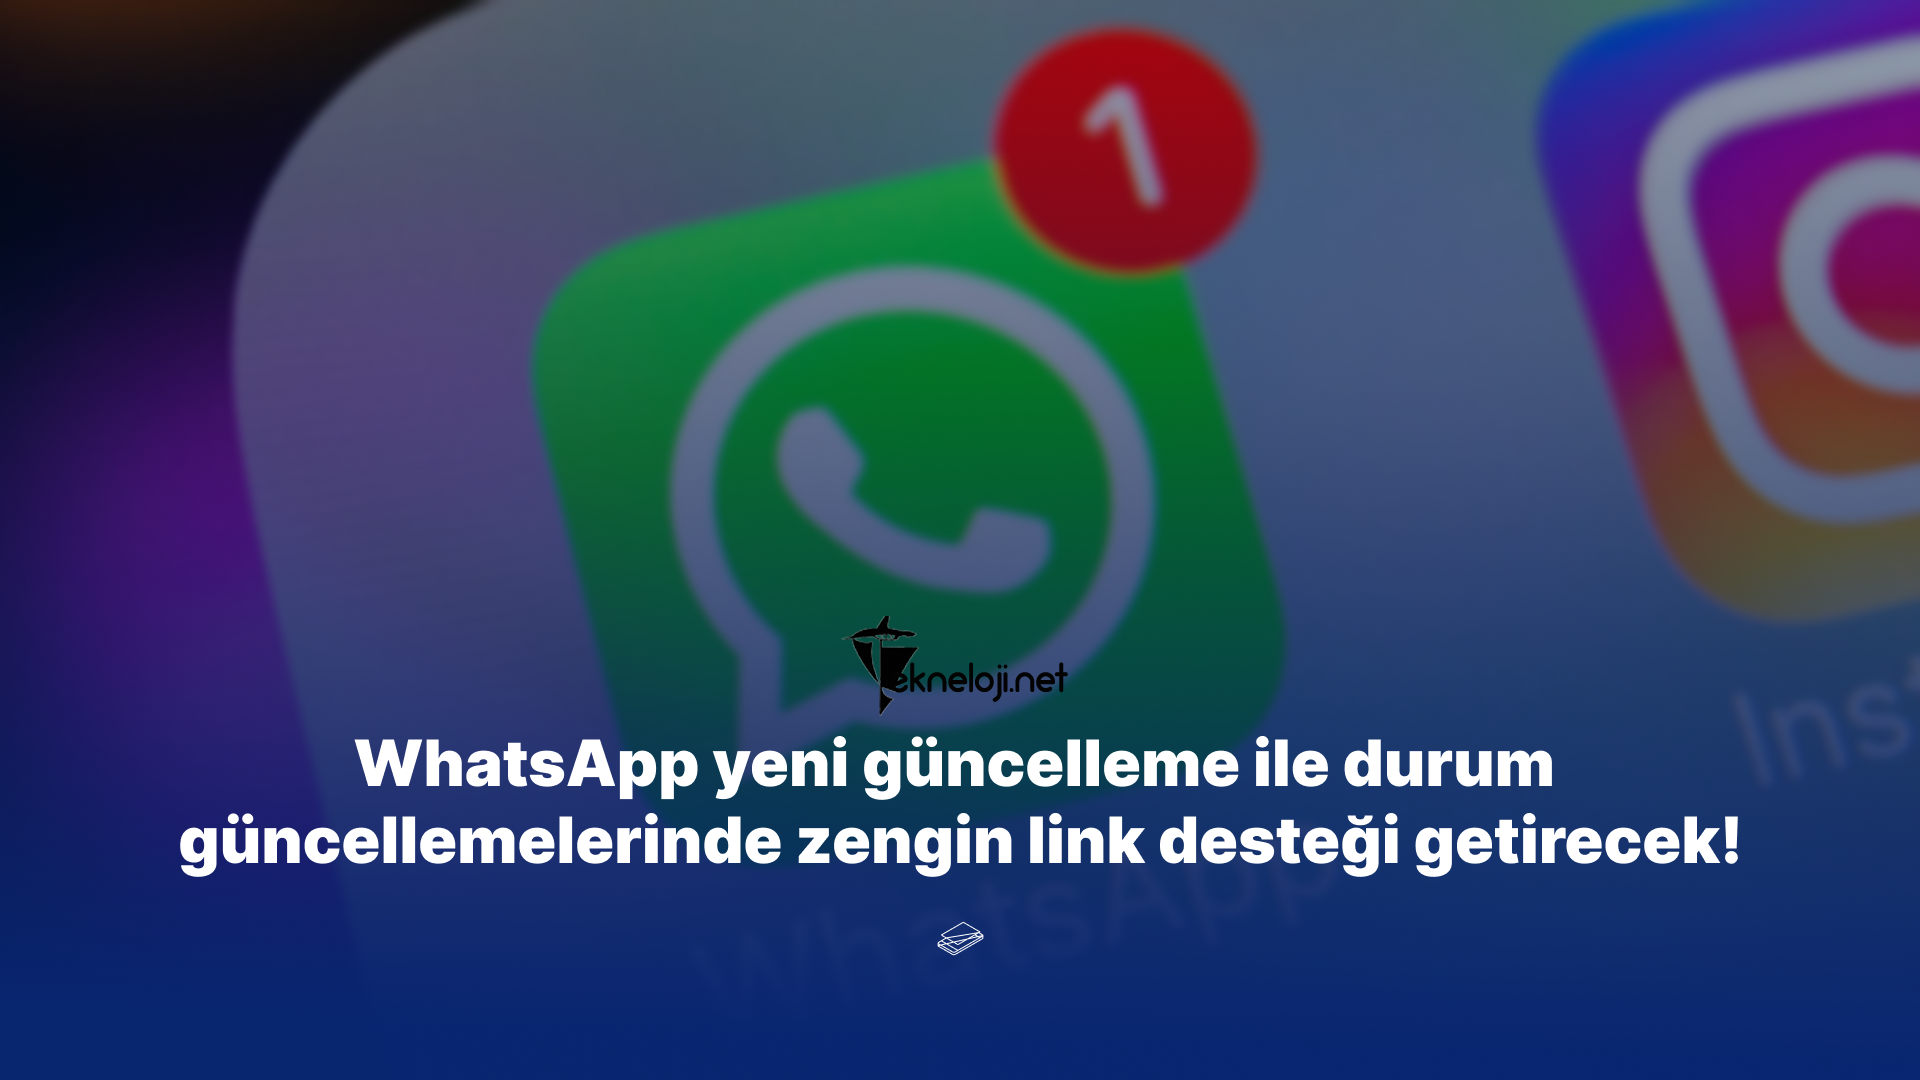 WhatsApp yeni güncelleme ile durum güncellemelerinde zengin link desteği getirecek!